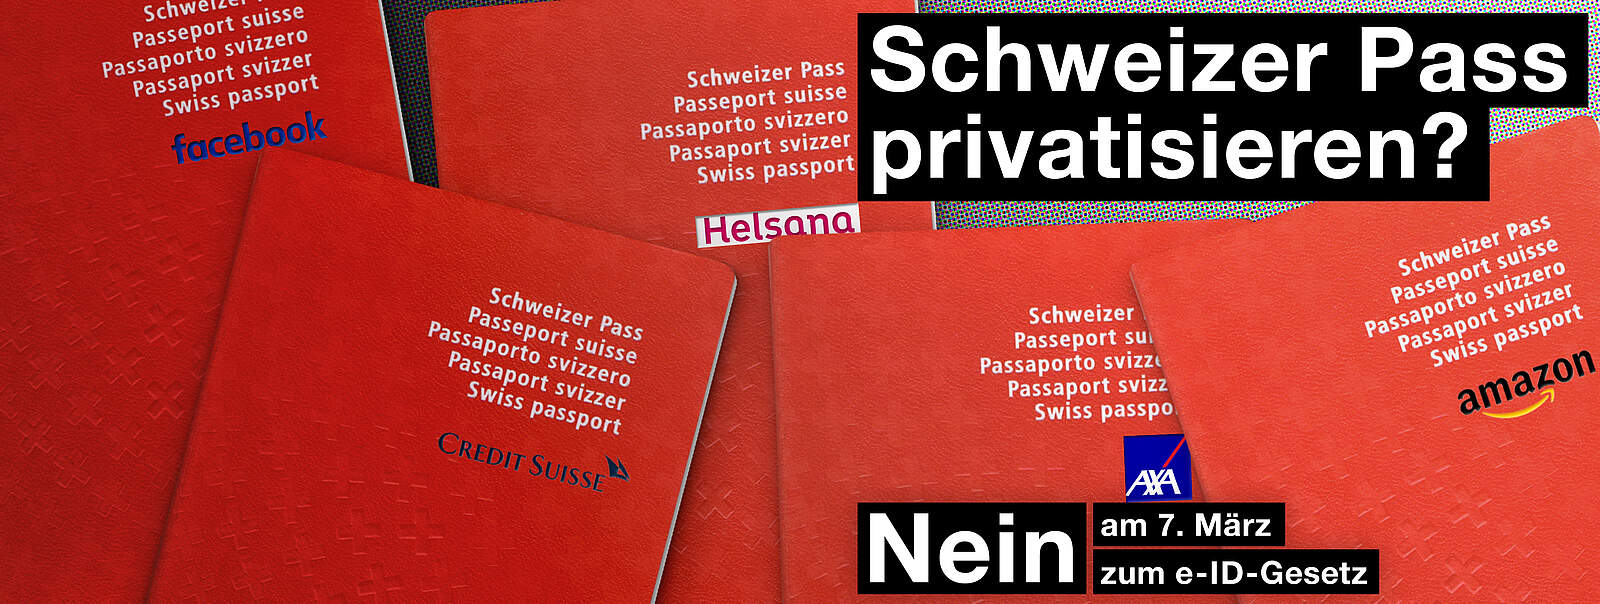 Schweizer Pass privatisieren? NEIN am 7. März